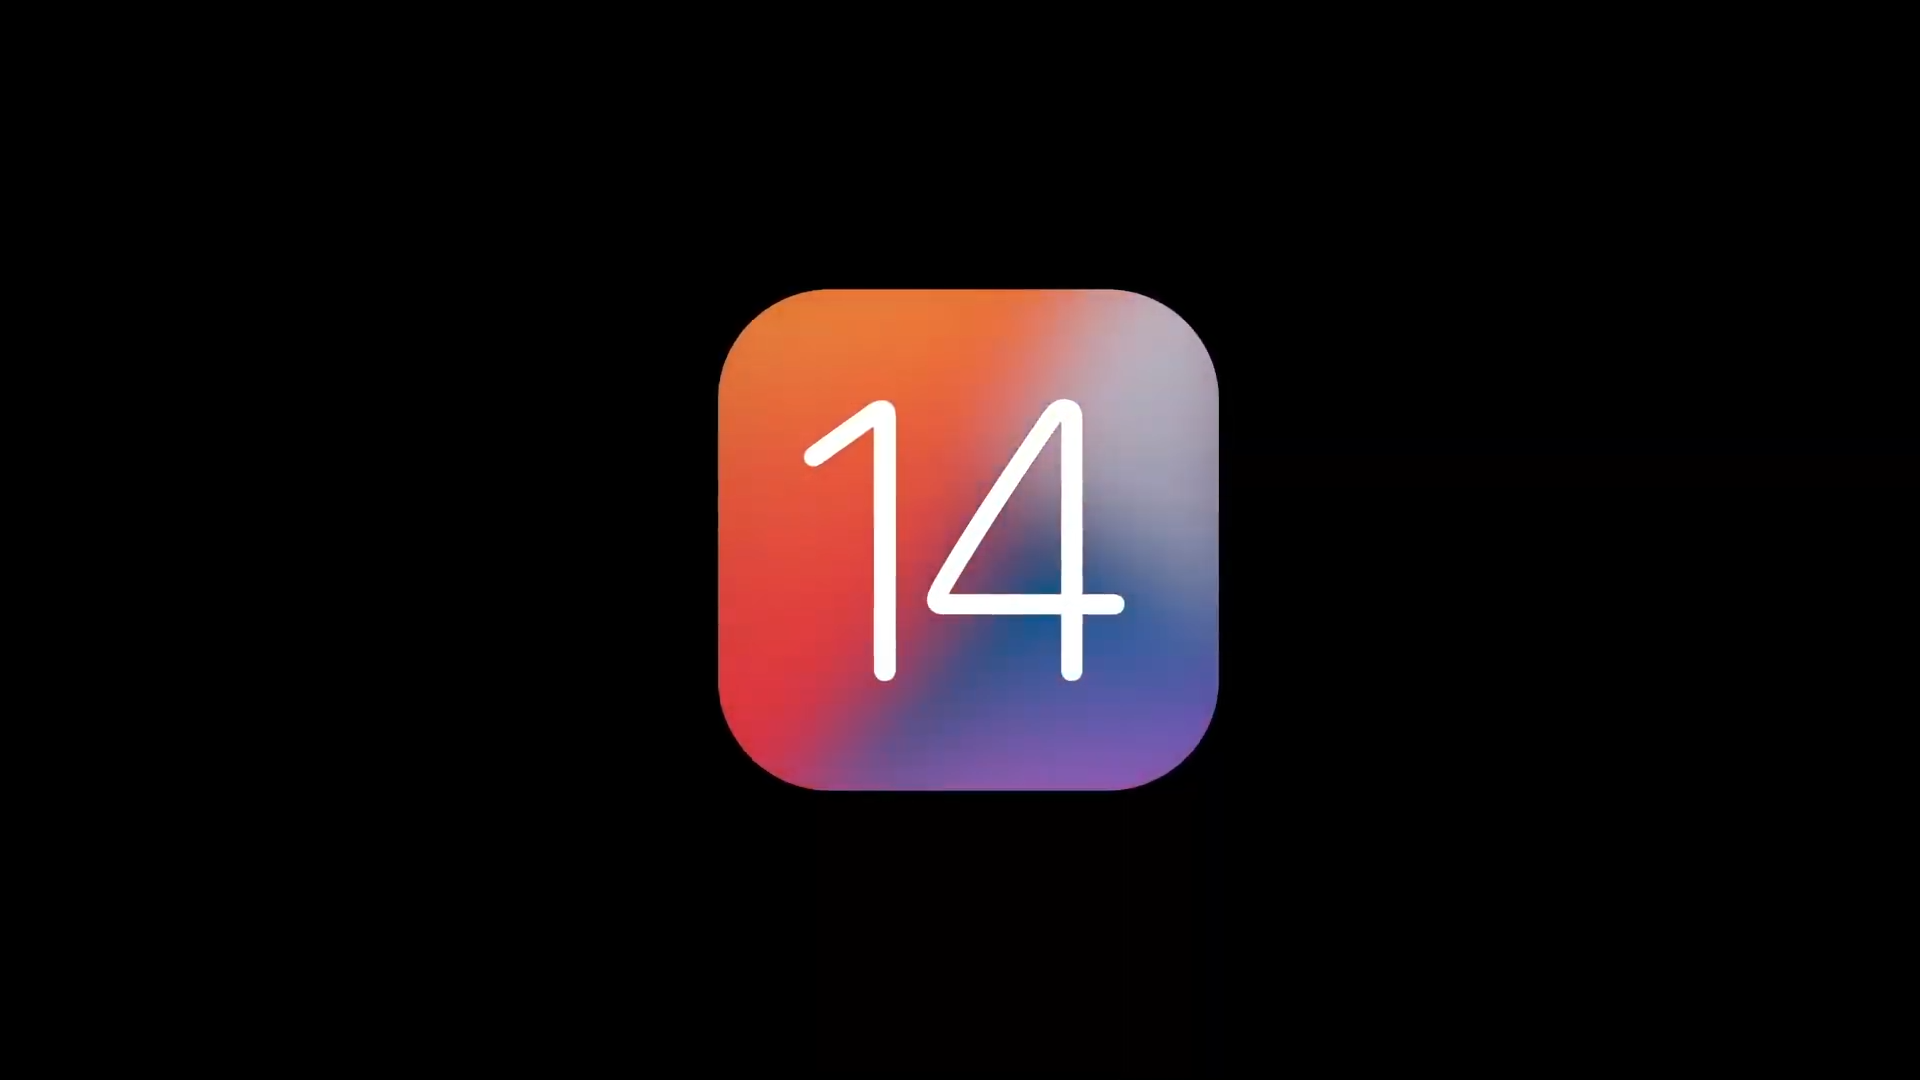 iOS 14 2